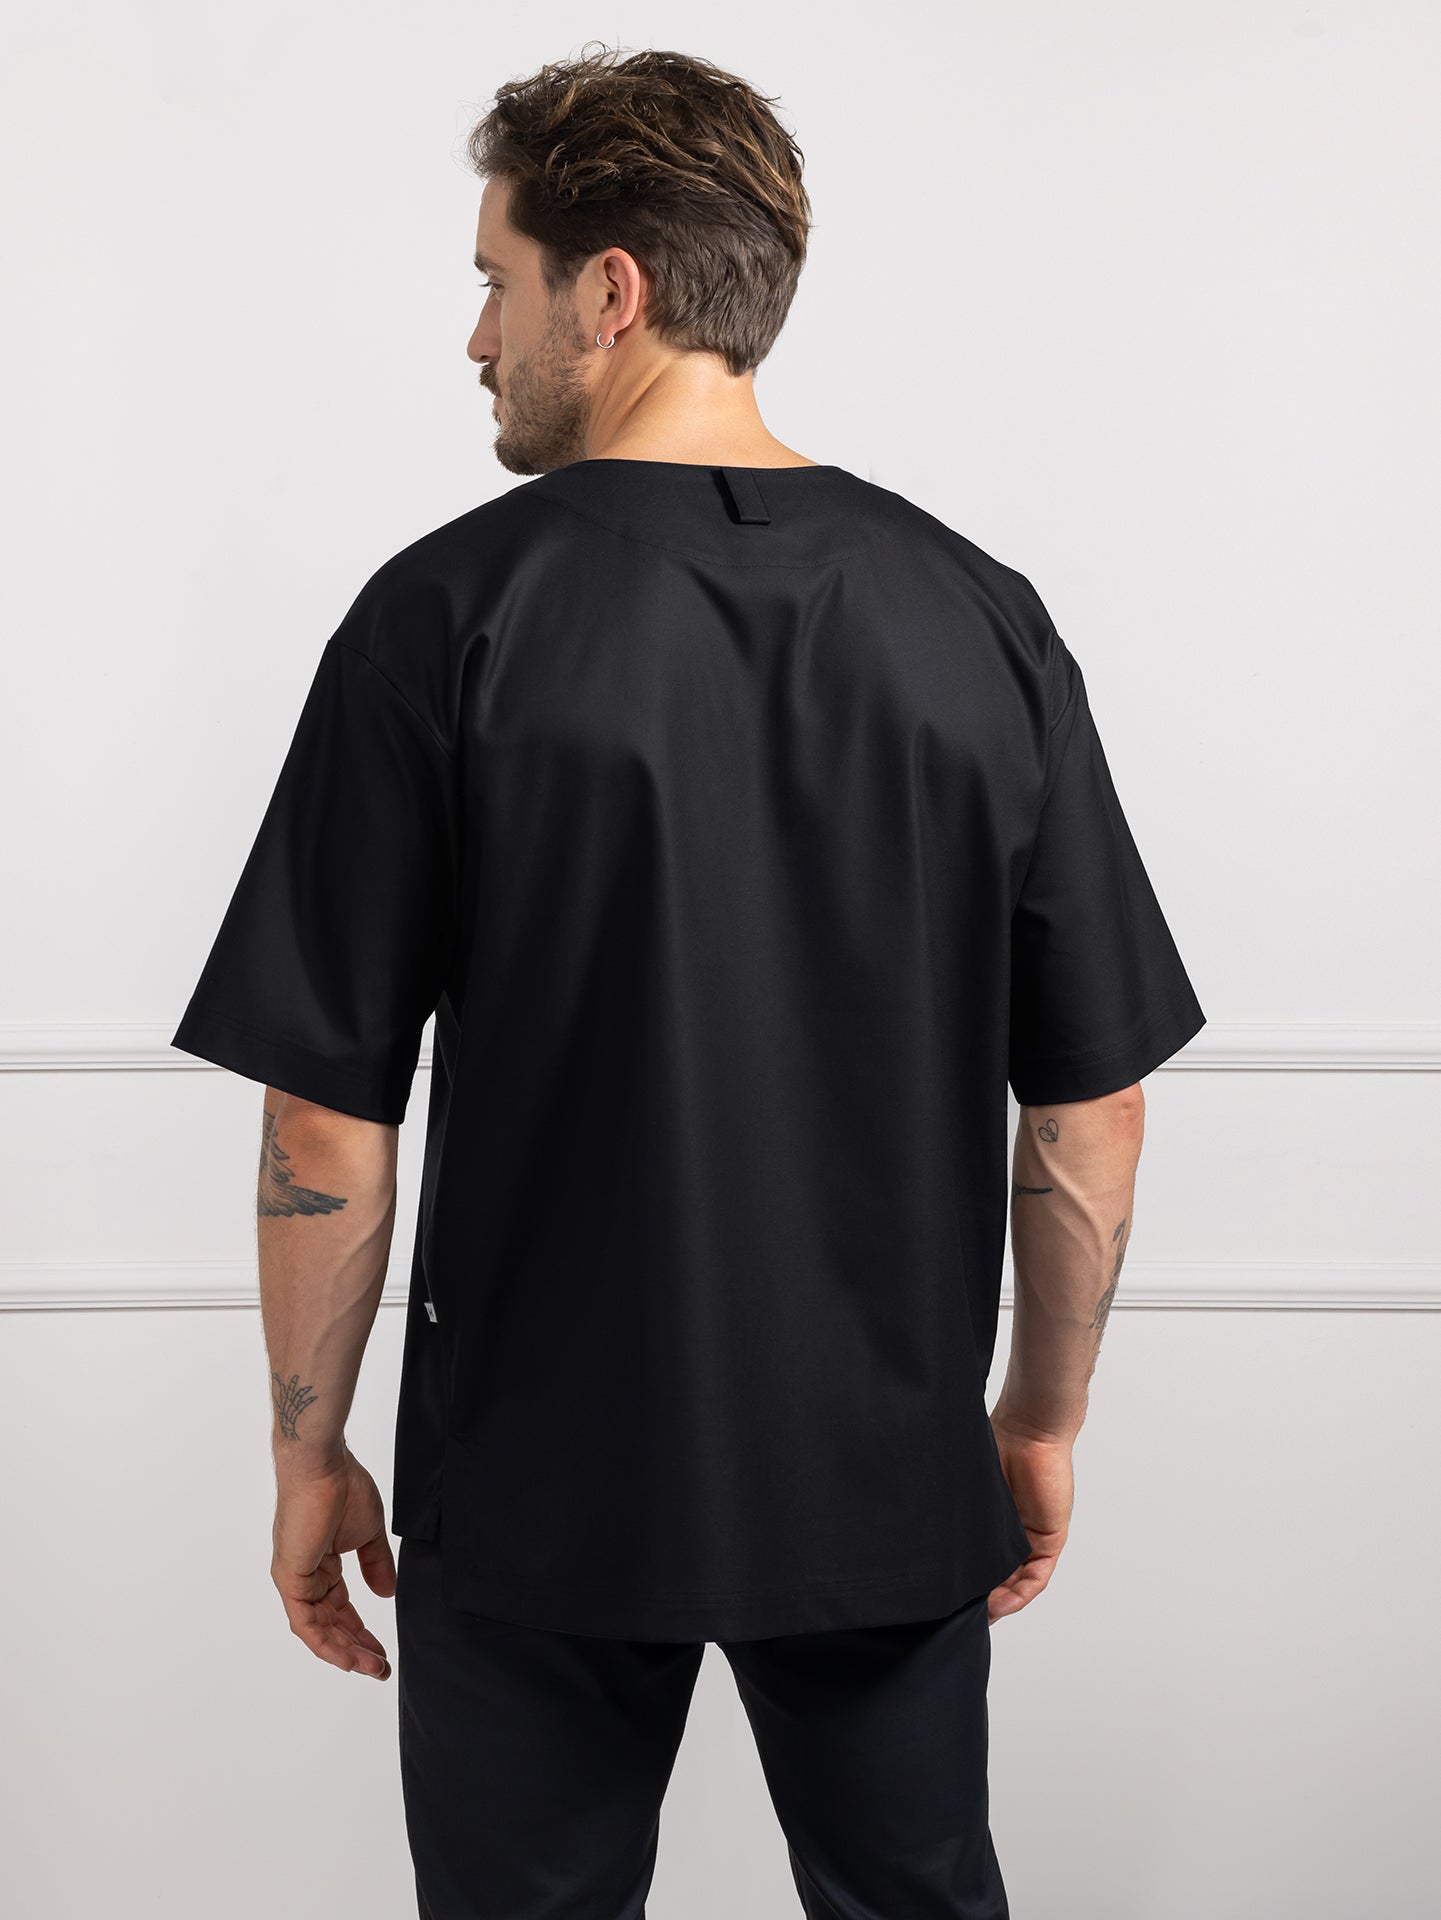 T-shirt Norian Black by Le Nouveau Chef -  ChefsCotton